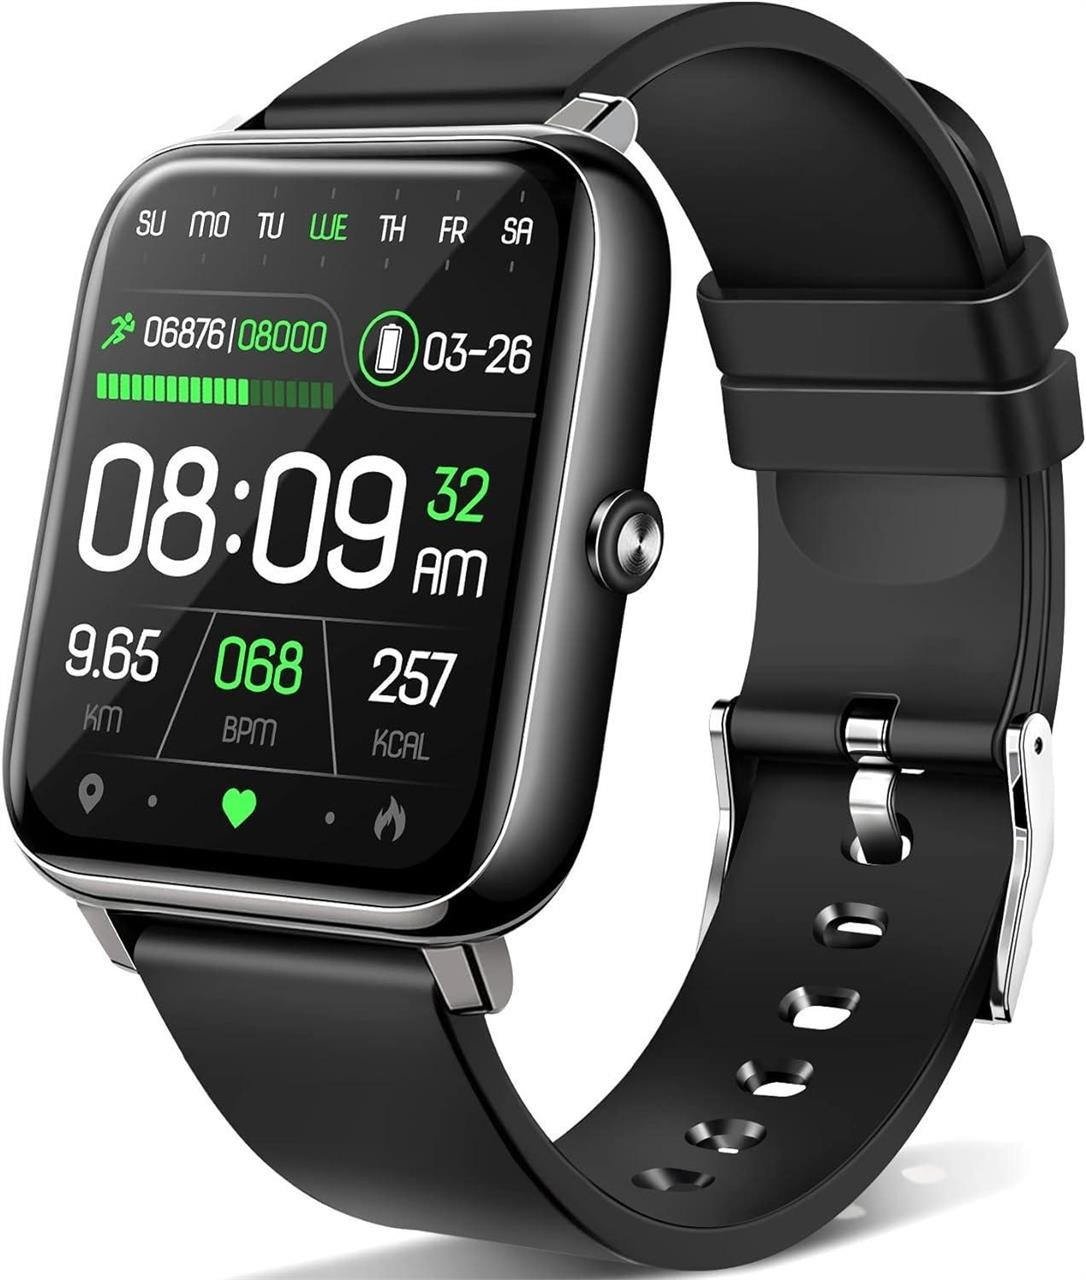 ANCwear 1.69 IP68 Smart Watch Black